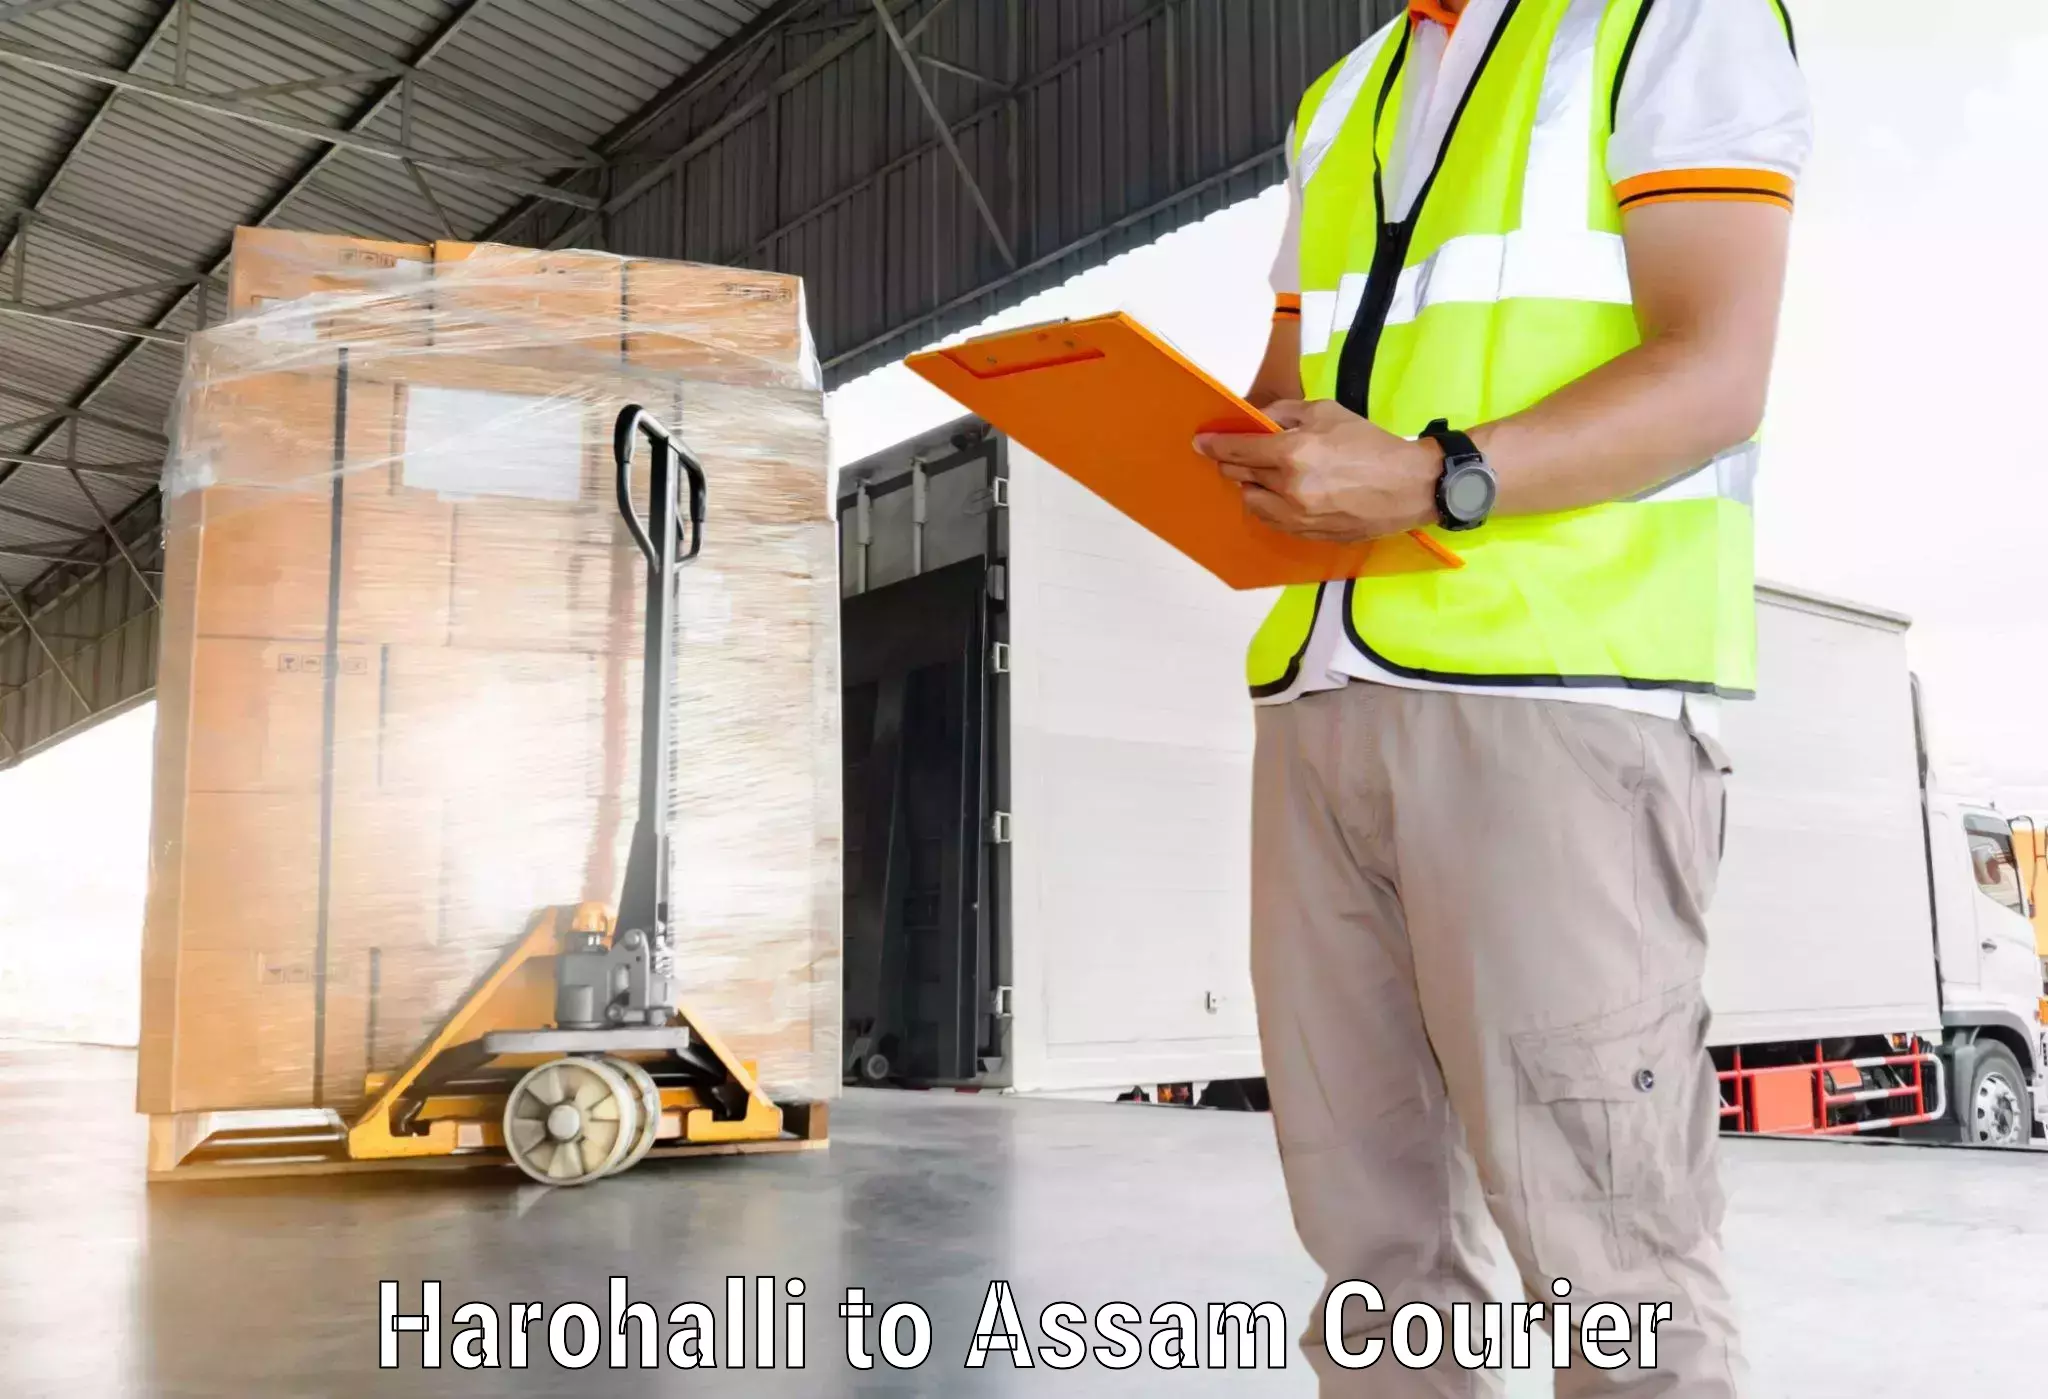 Business delivery service Harohalli to Hailakandi